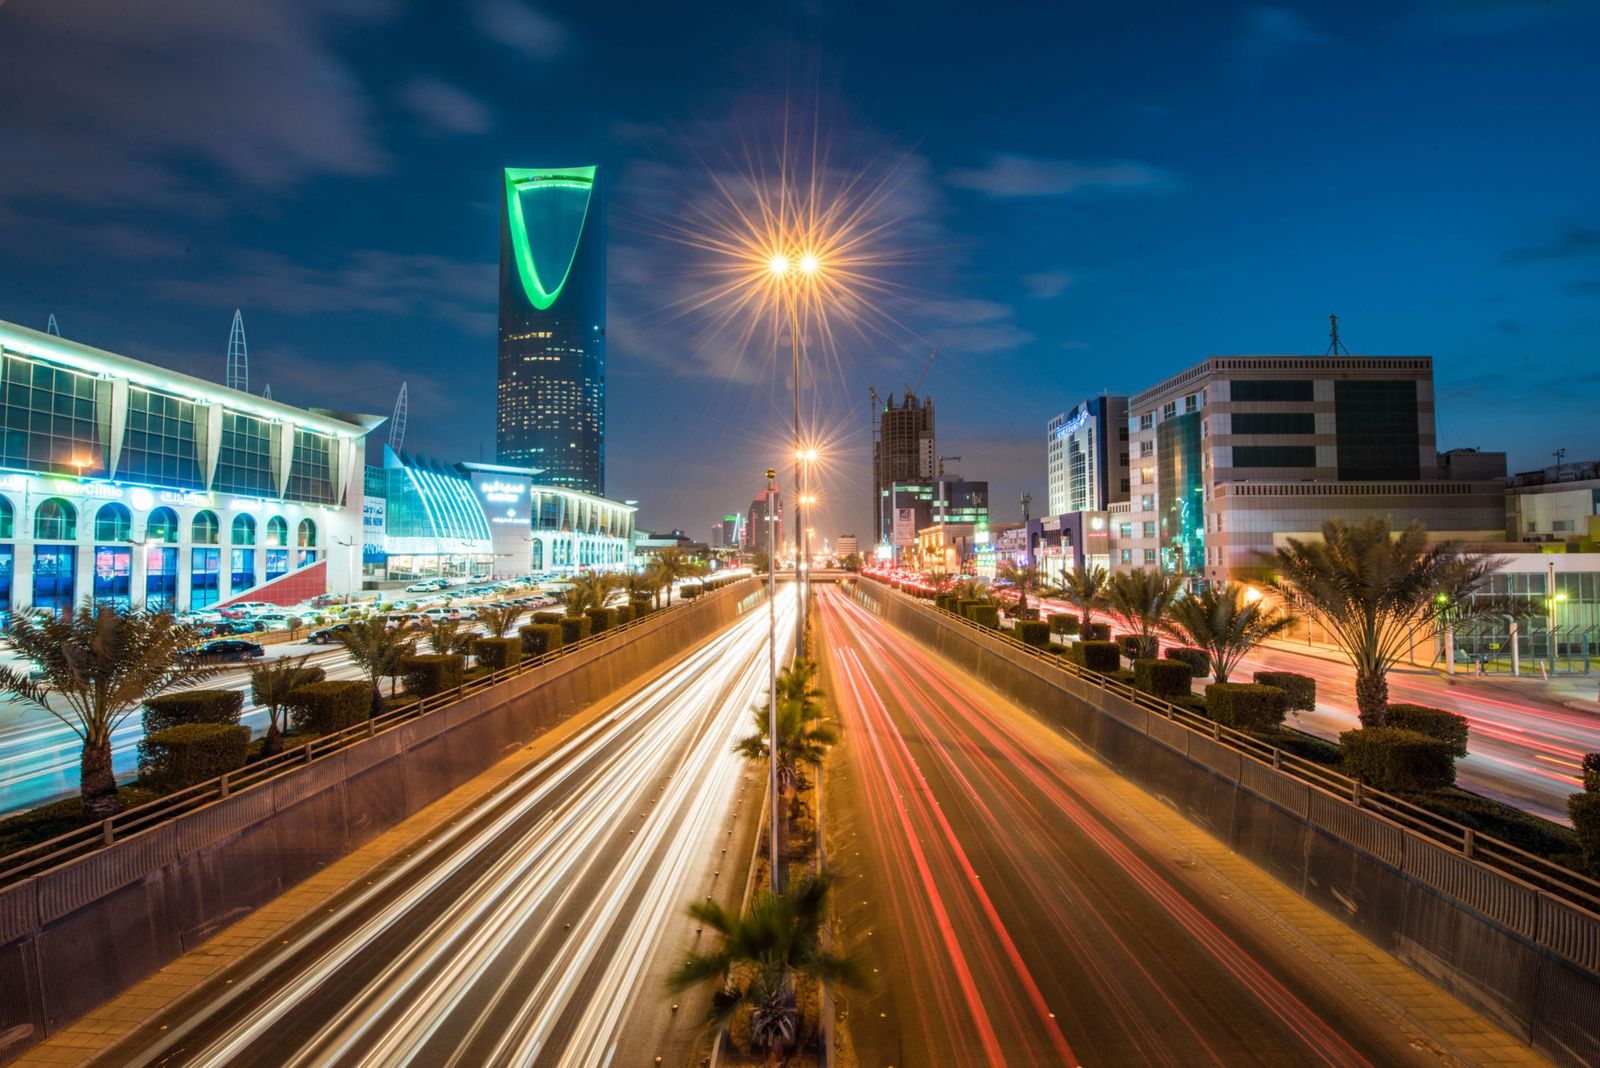 السعودية تبيع سندات دولية بقيمة 10 مليارات دولار